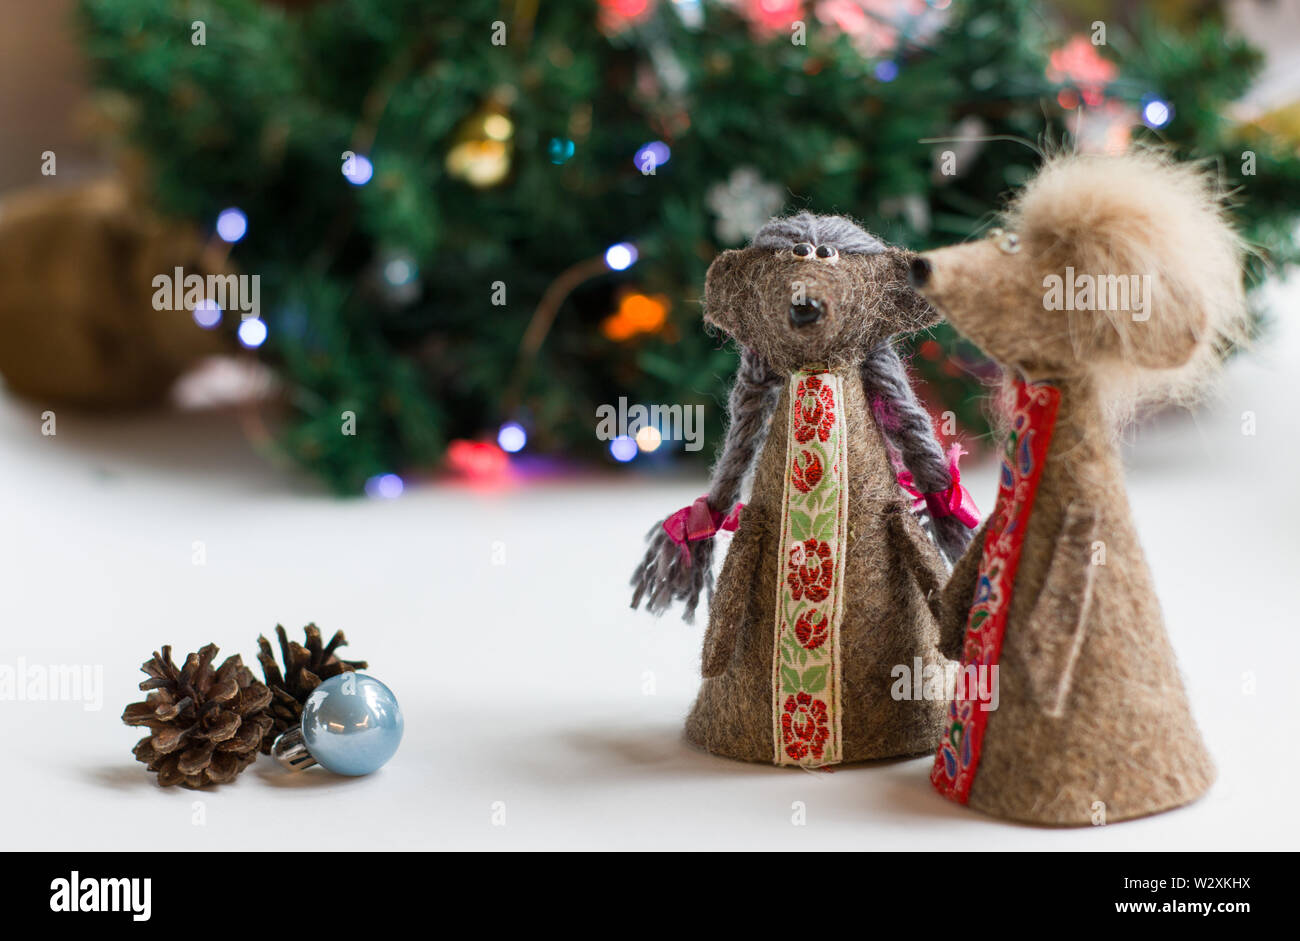 Neues Jahr Karte. Symbol für das Neue Jahr 2020 - Metall, silber Ratte. Süße Ratte mit Weihnachtsbaum dekoriert. Stockfoto